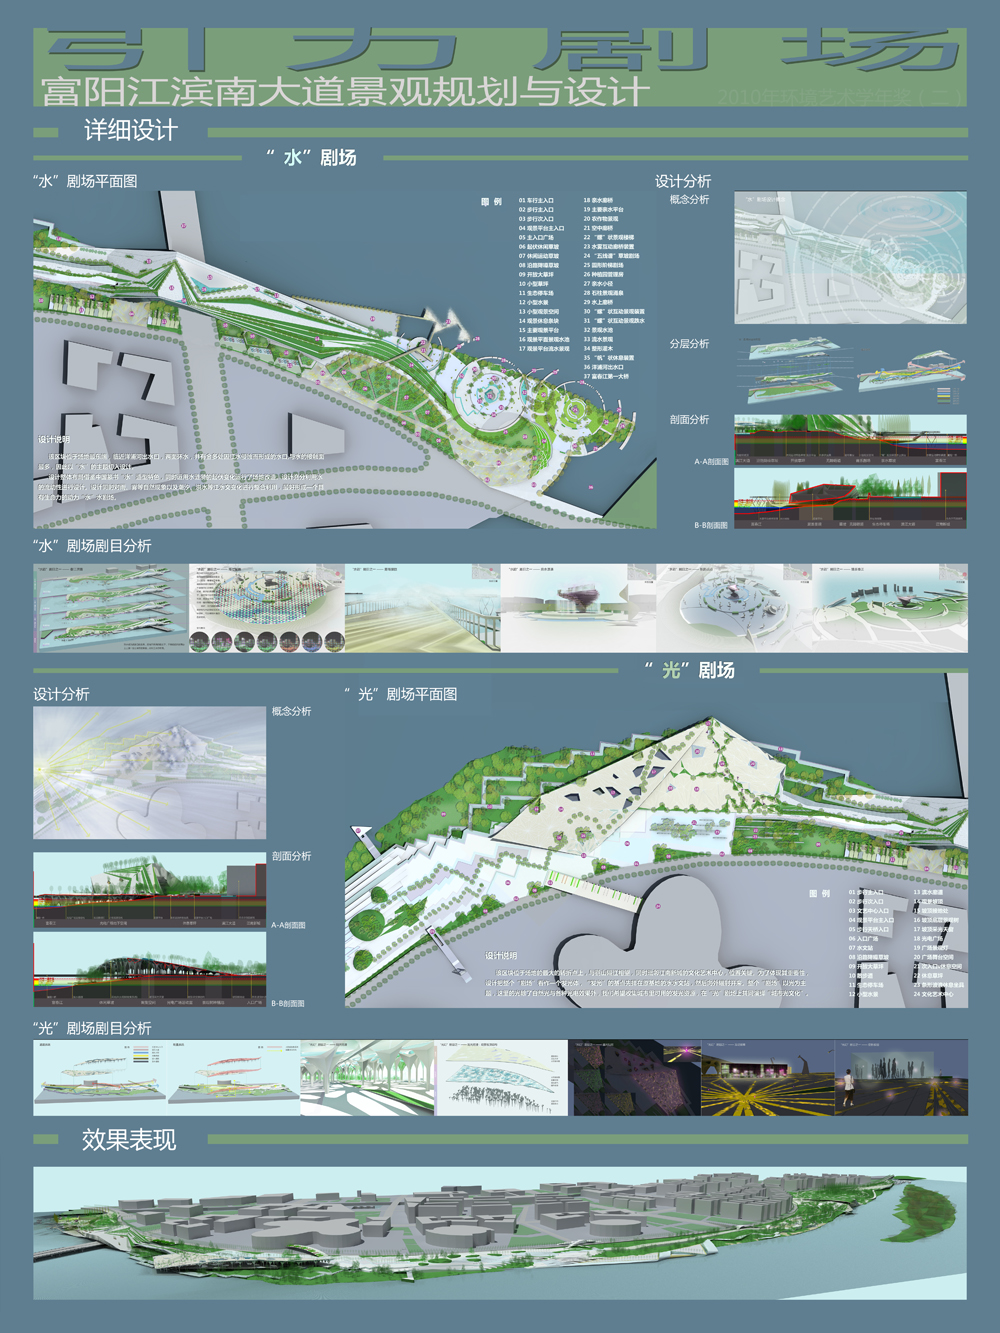 “引力剧场”——富阳江滨南大道景观规划与设计-2